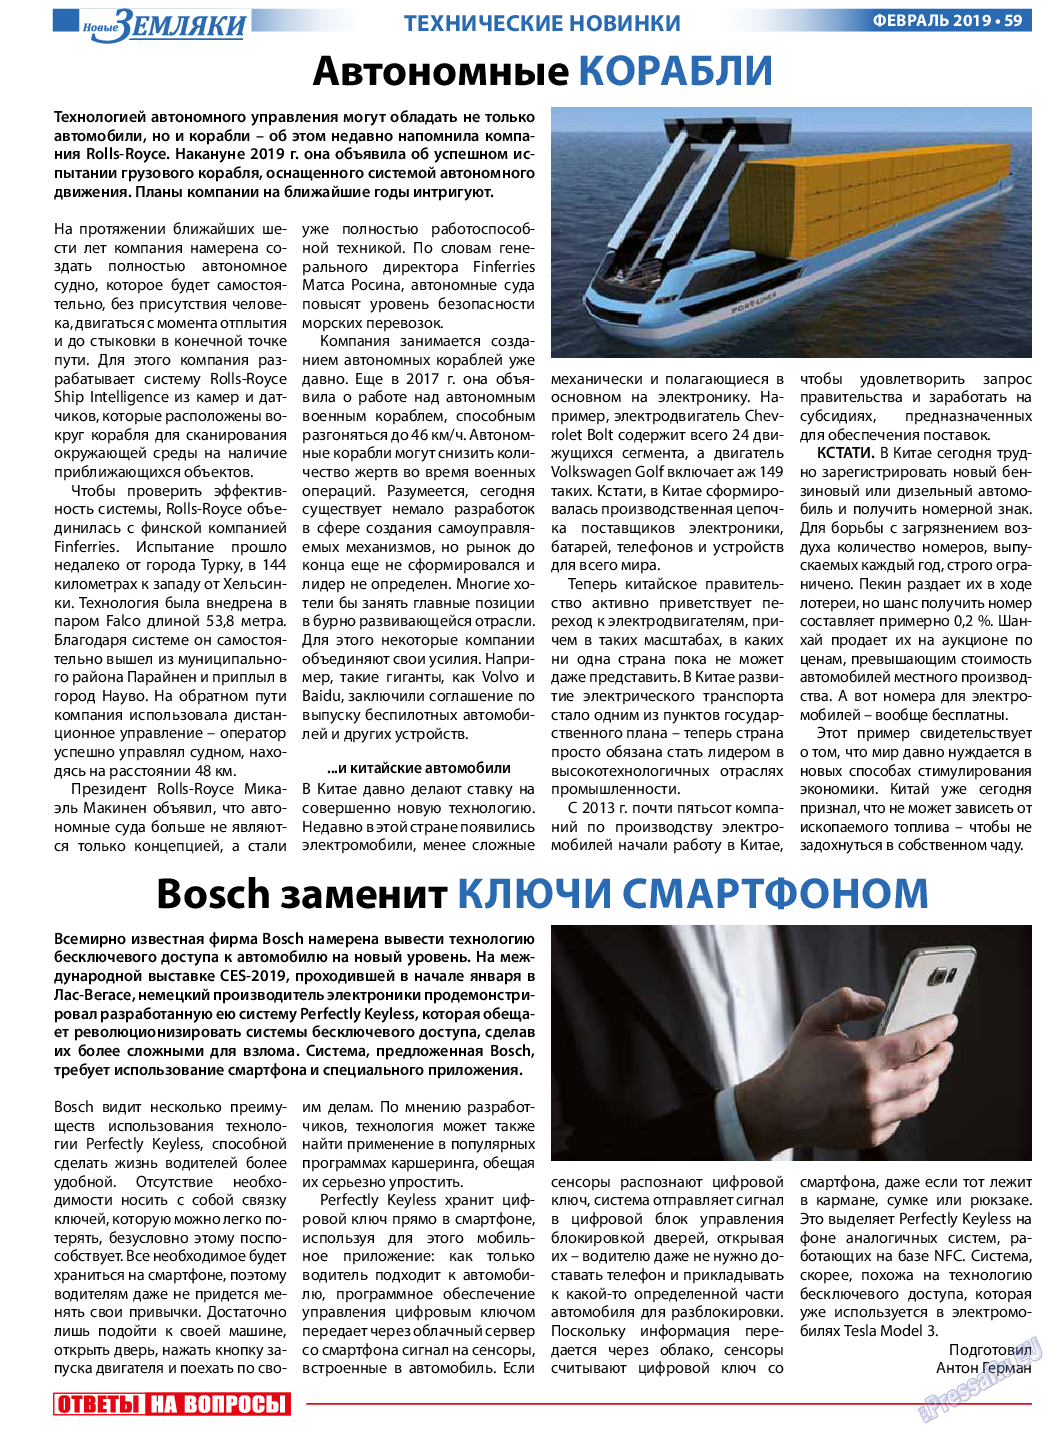 Новые Земляки (газета). 2019 год, номер 2, стр. 59